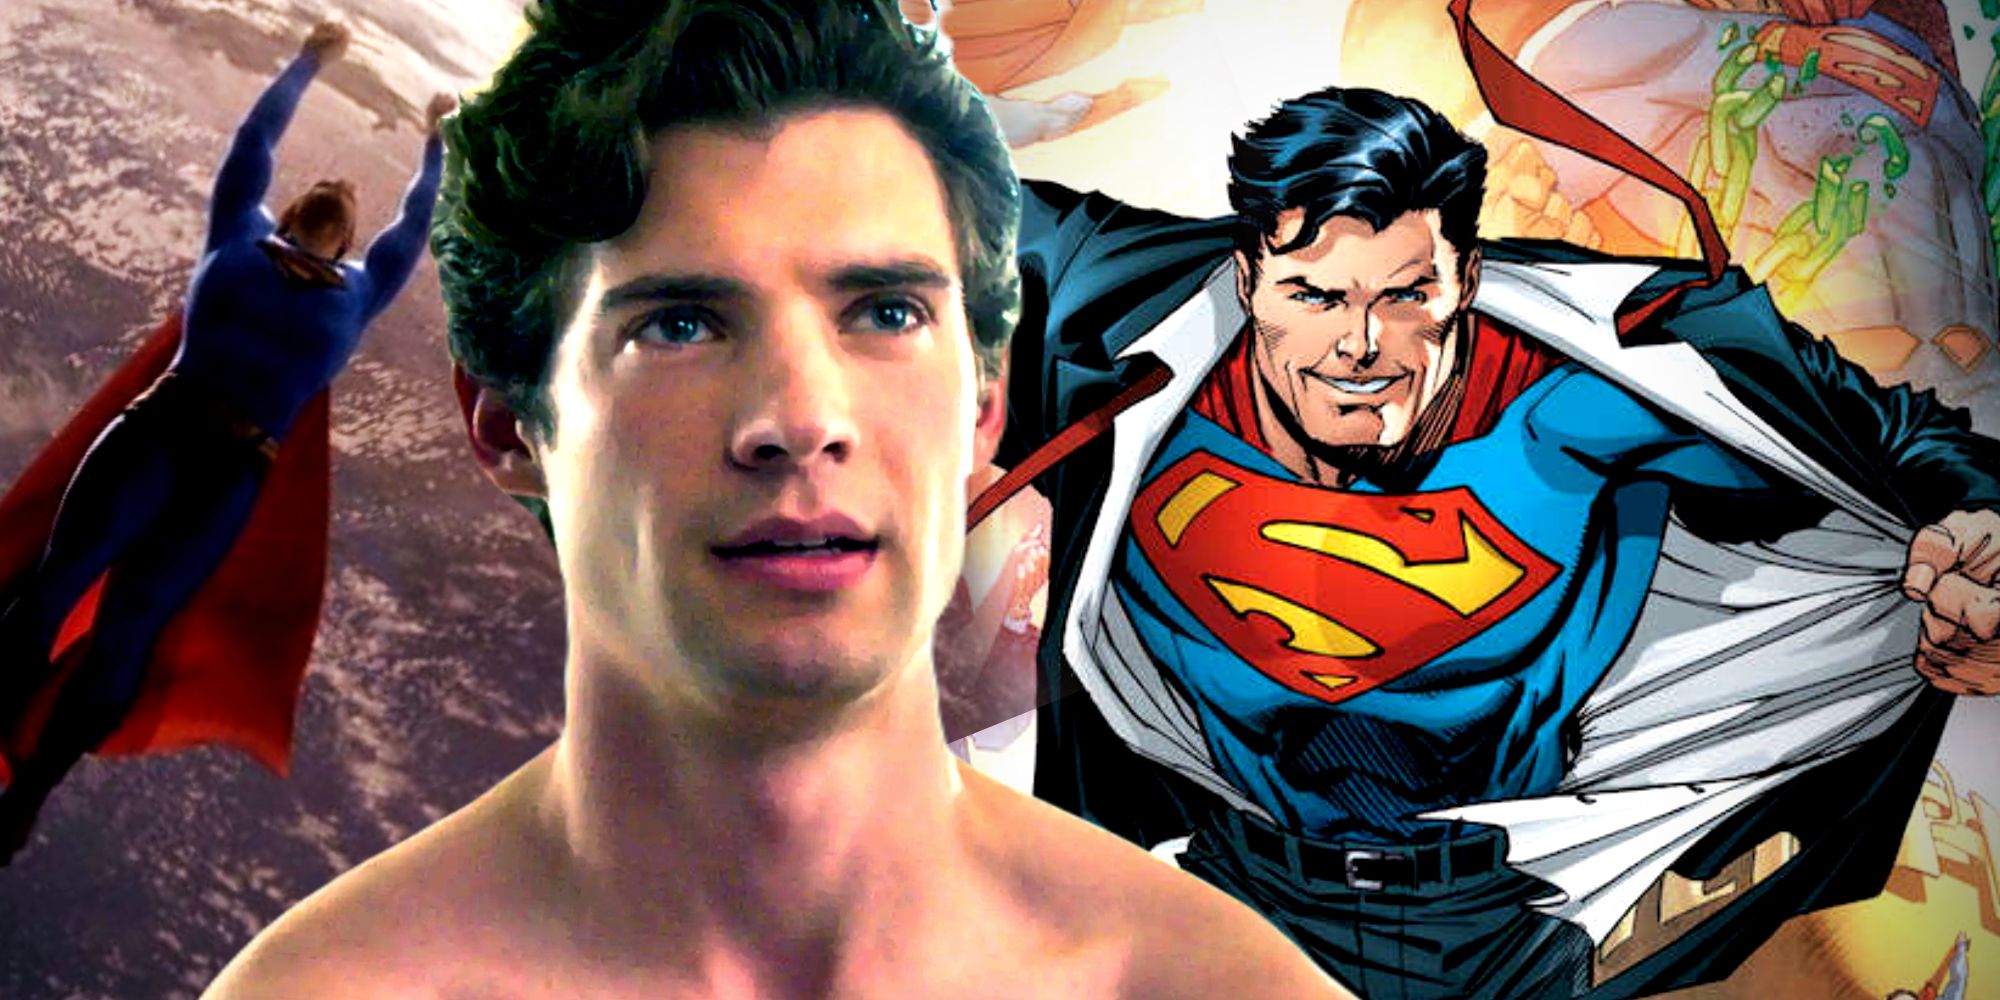 David Corenswet recrea el momento icónico del disfraz de Superman en un impresionante arte de DC